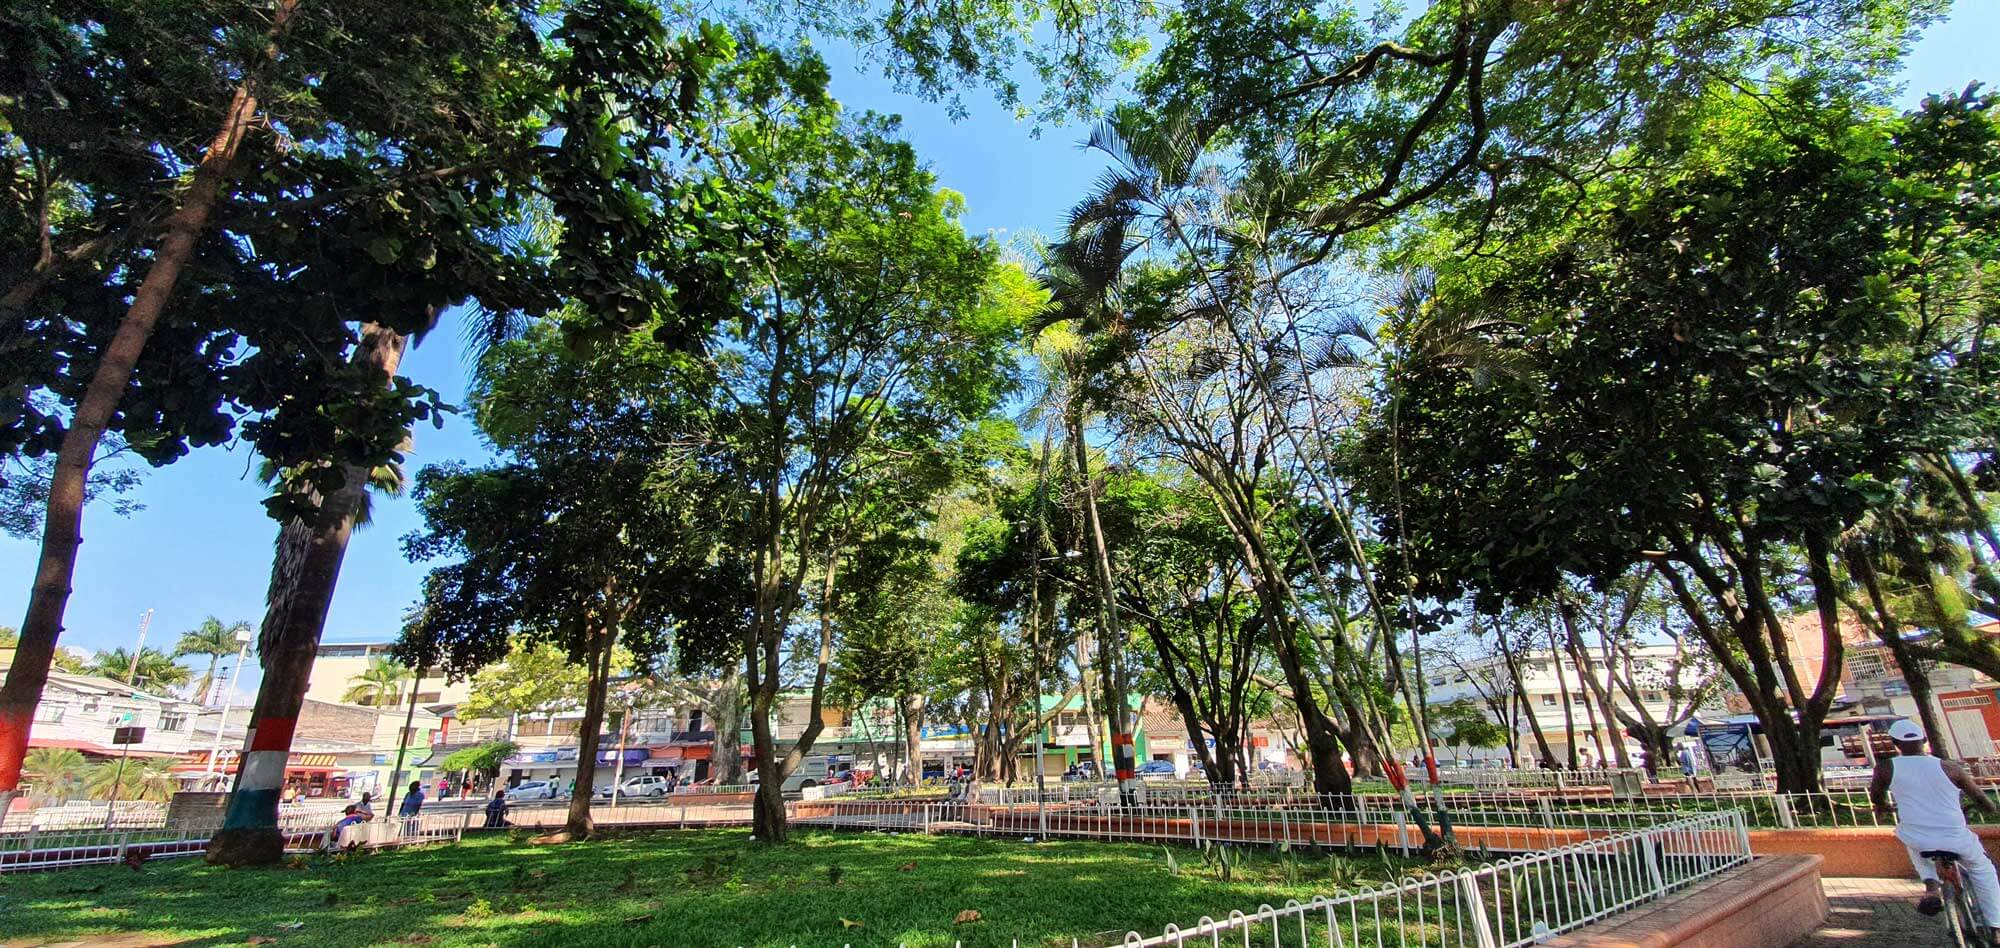 “Parque de los fundadores/Parque de las Iguanas”. Fotografía: Jaír Cerón Velasco para el CNMH, 2020.